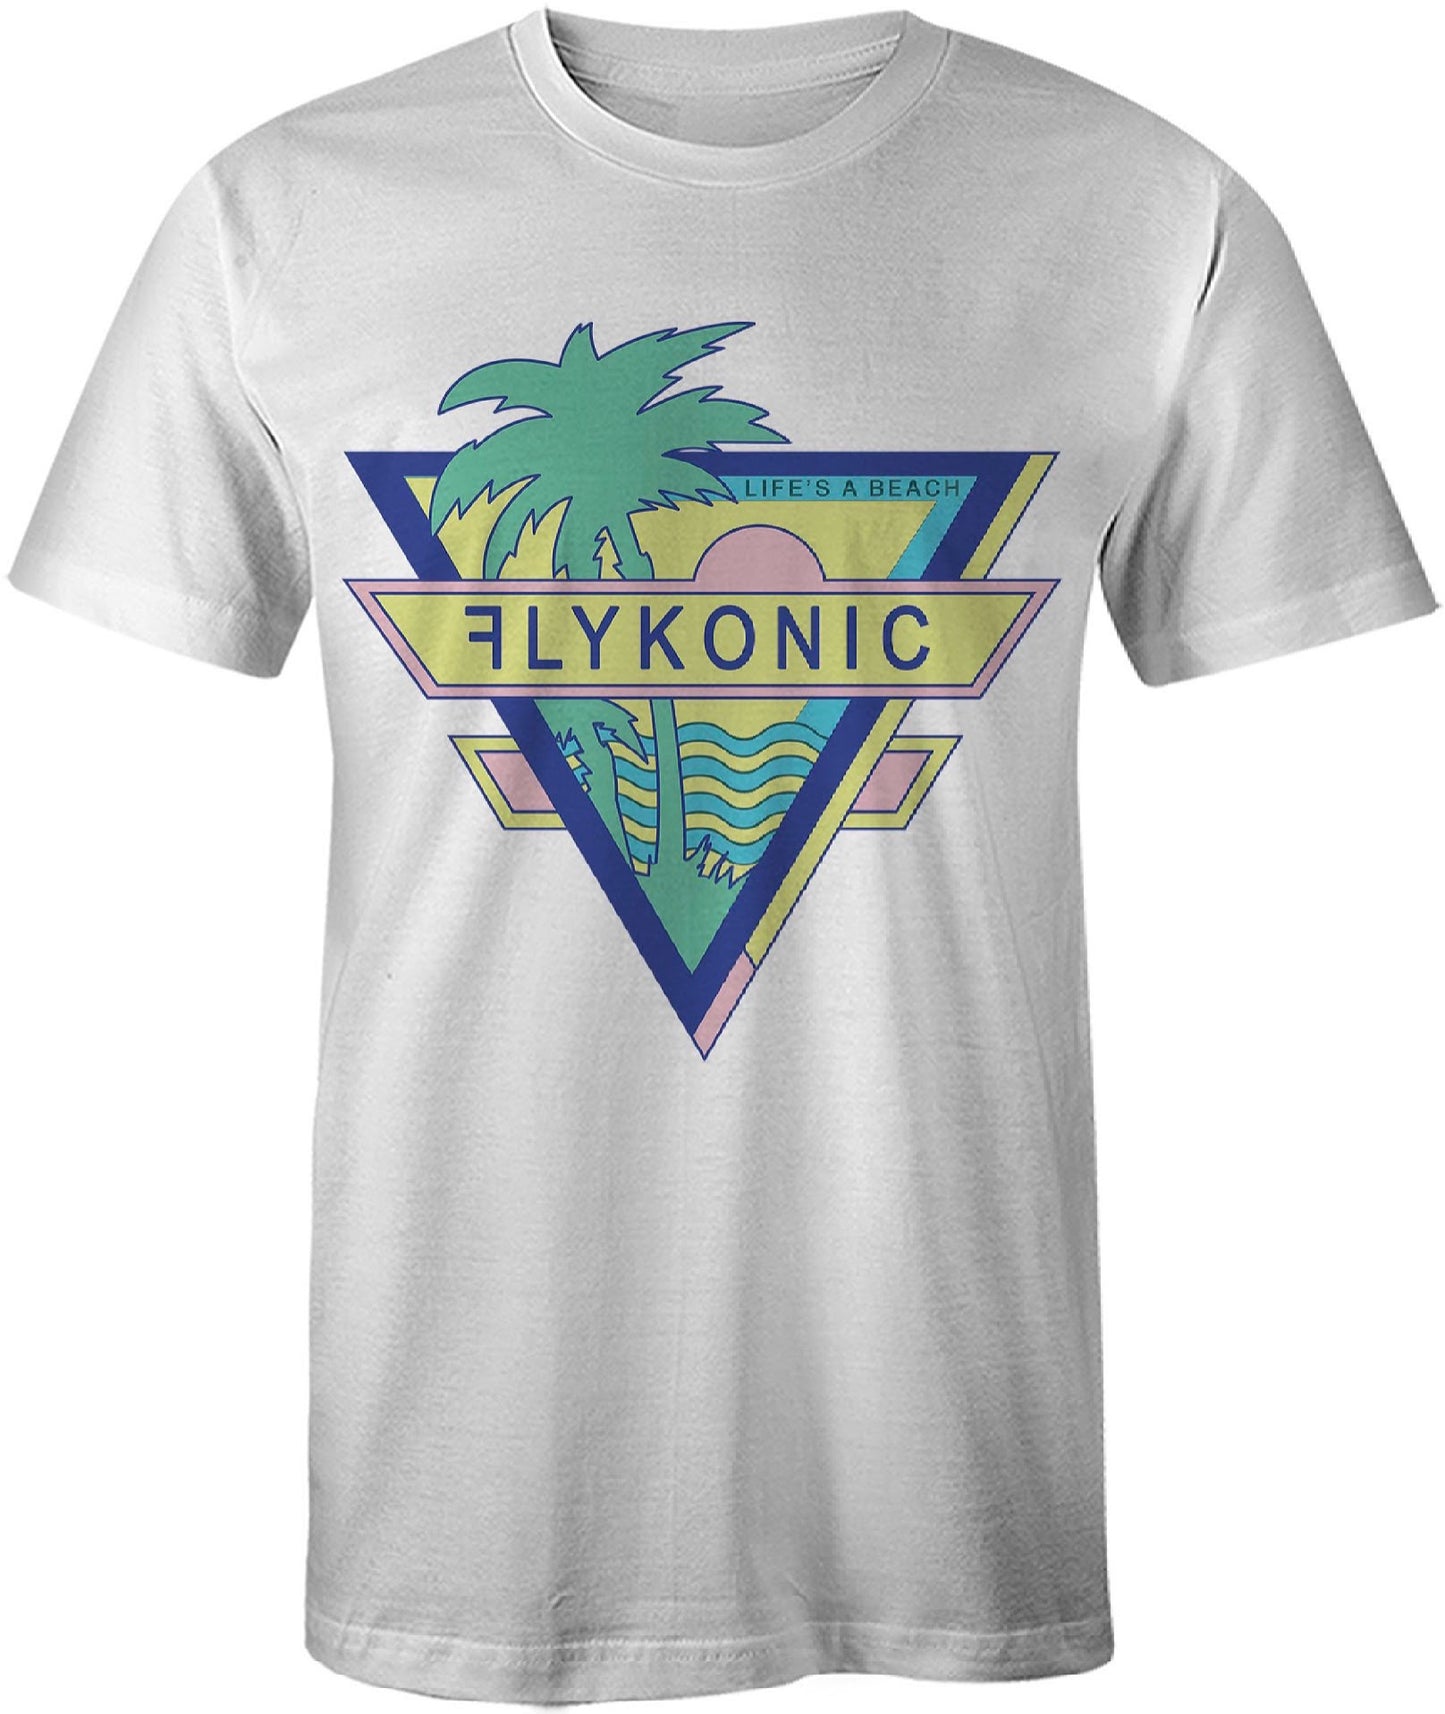 Flykonic Life's a Beach T-Shirt